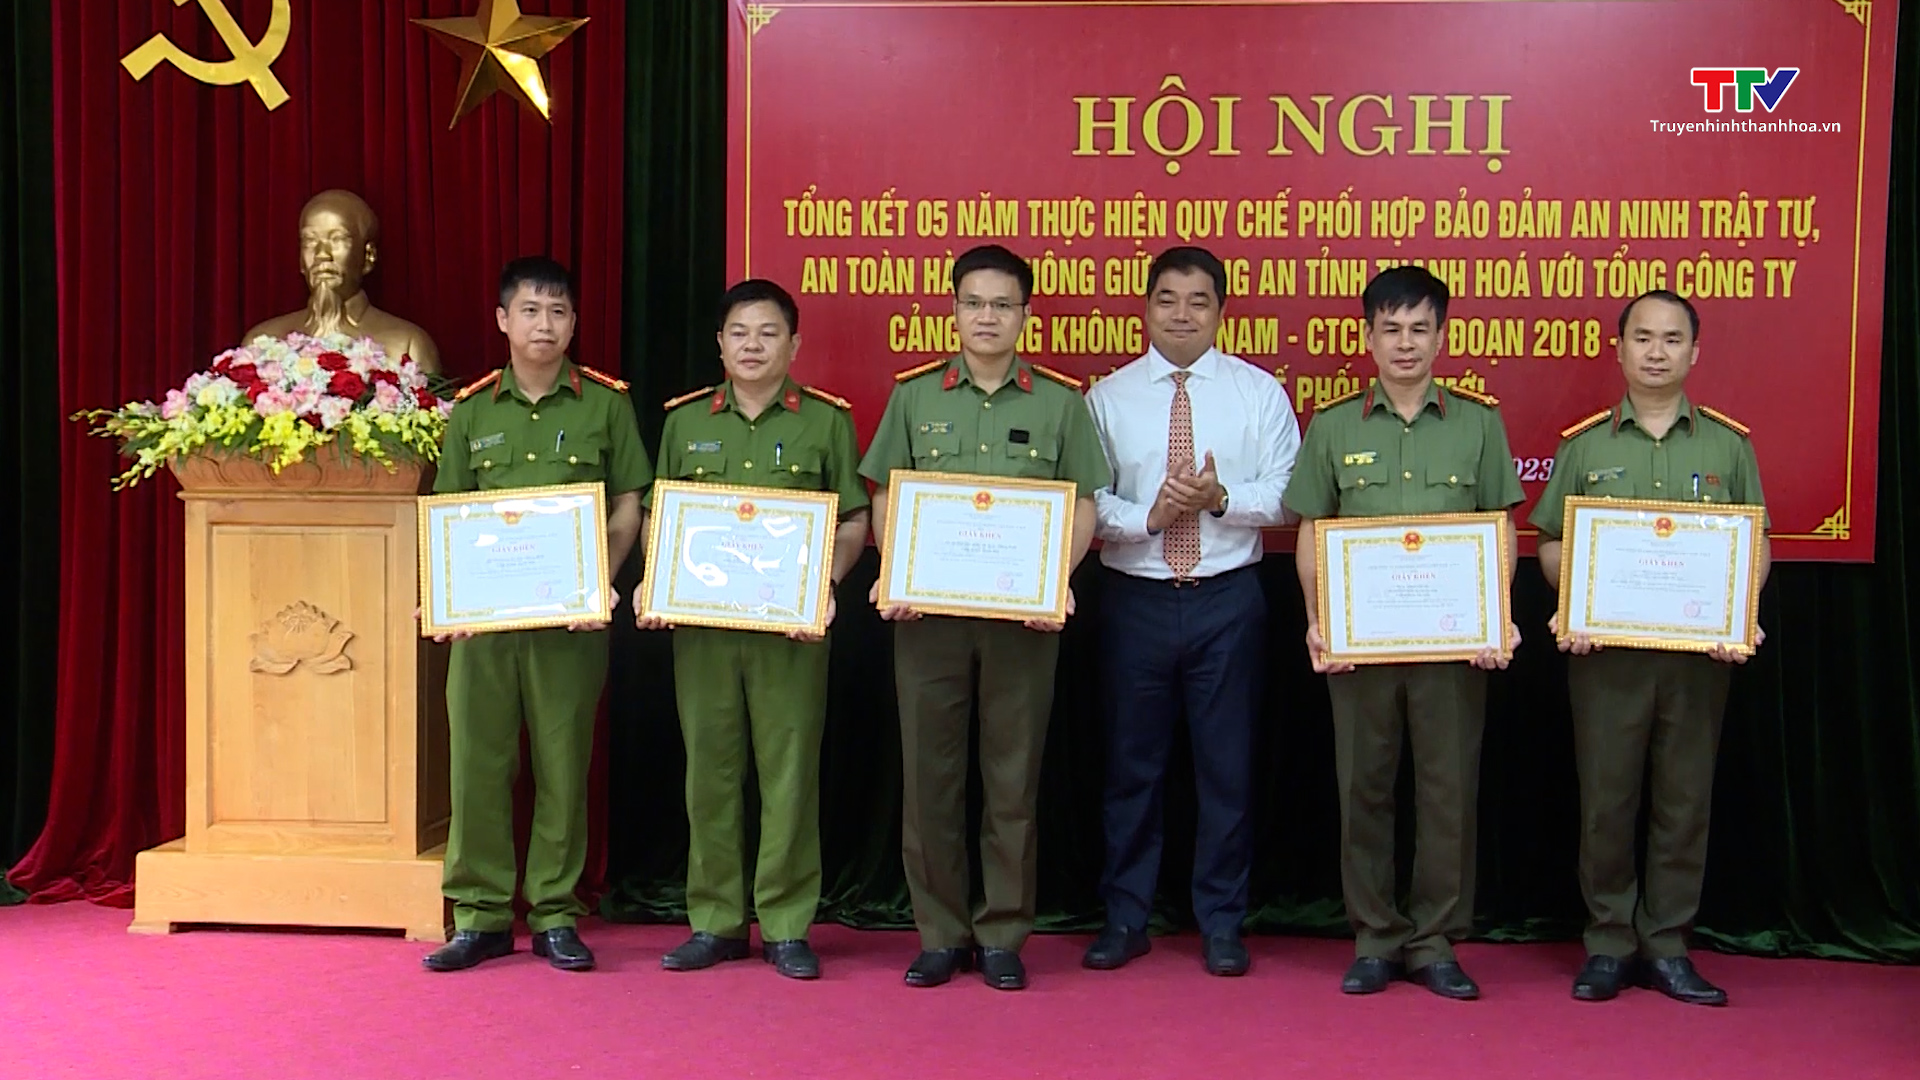 Tổng kết 5 năm thực hiện Quy chế phối hợp giữa Công an tỉnh Thanh Hóa với Tổng Công ty Cảng hàng không Việt Nam - CTCP - Ảnh 6.